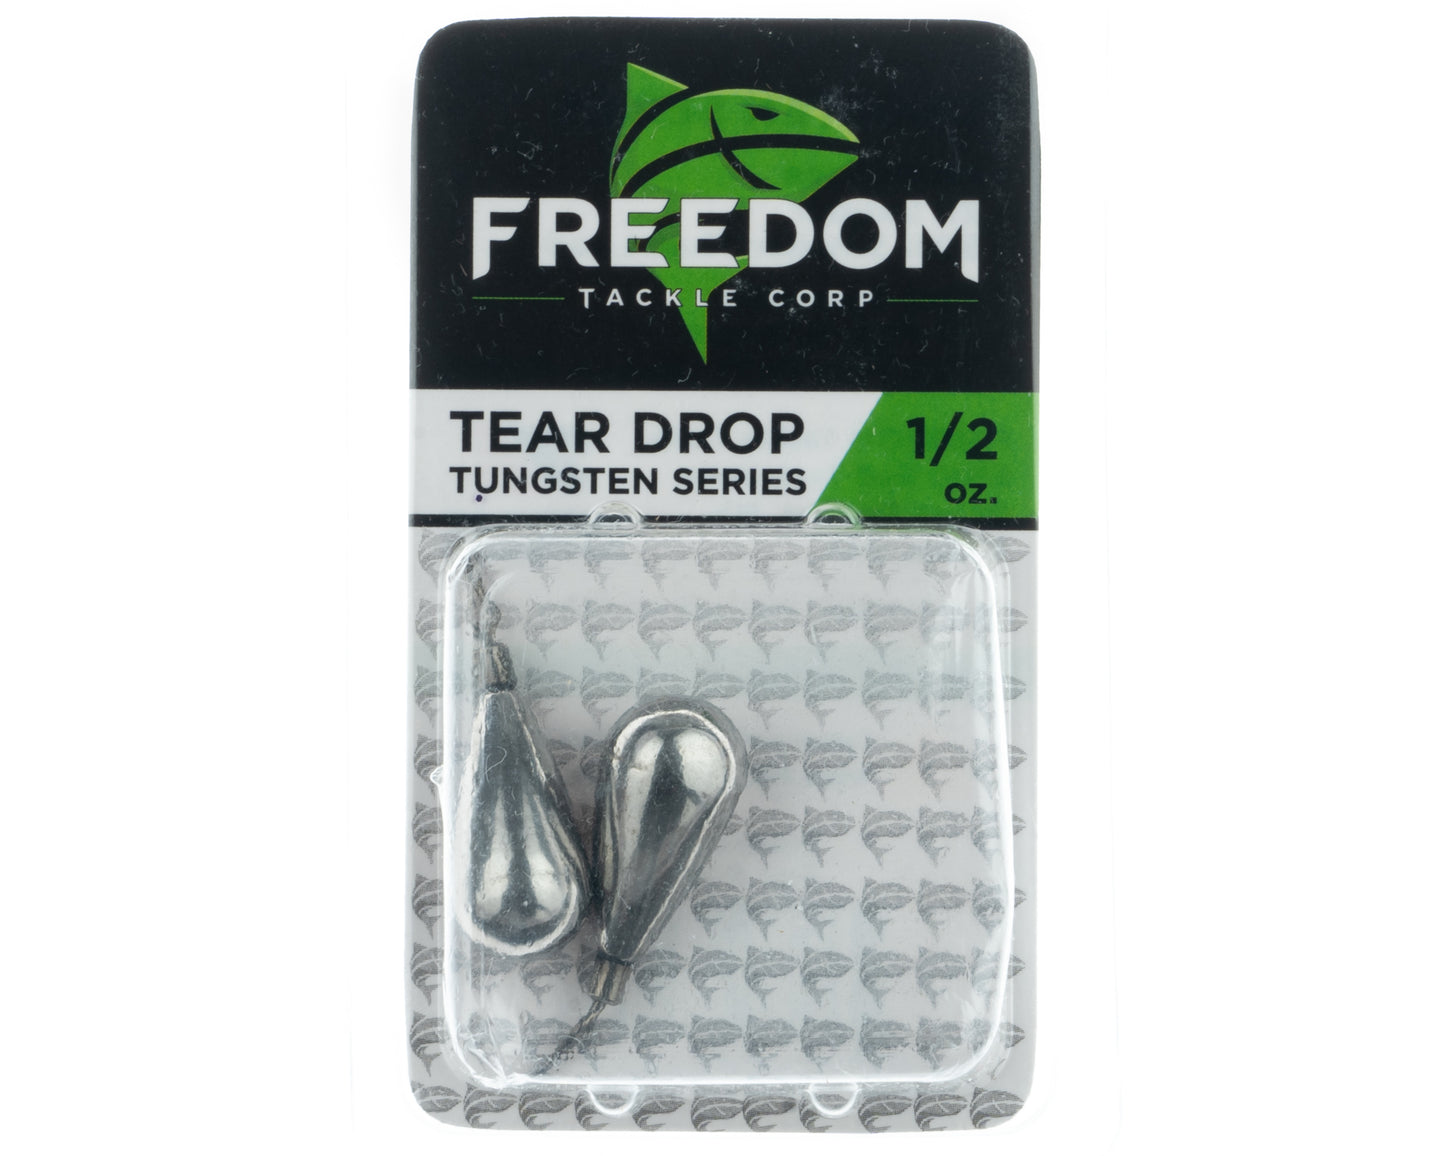 Freedom Tear Drop - Tungsten